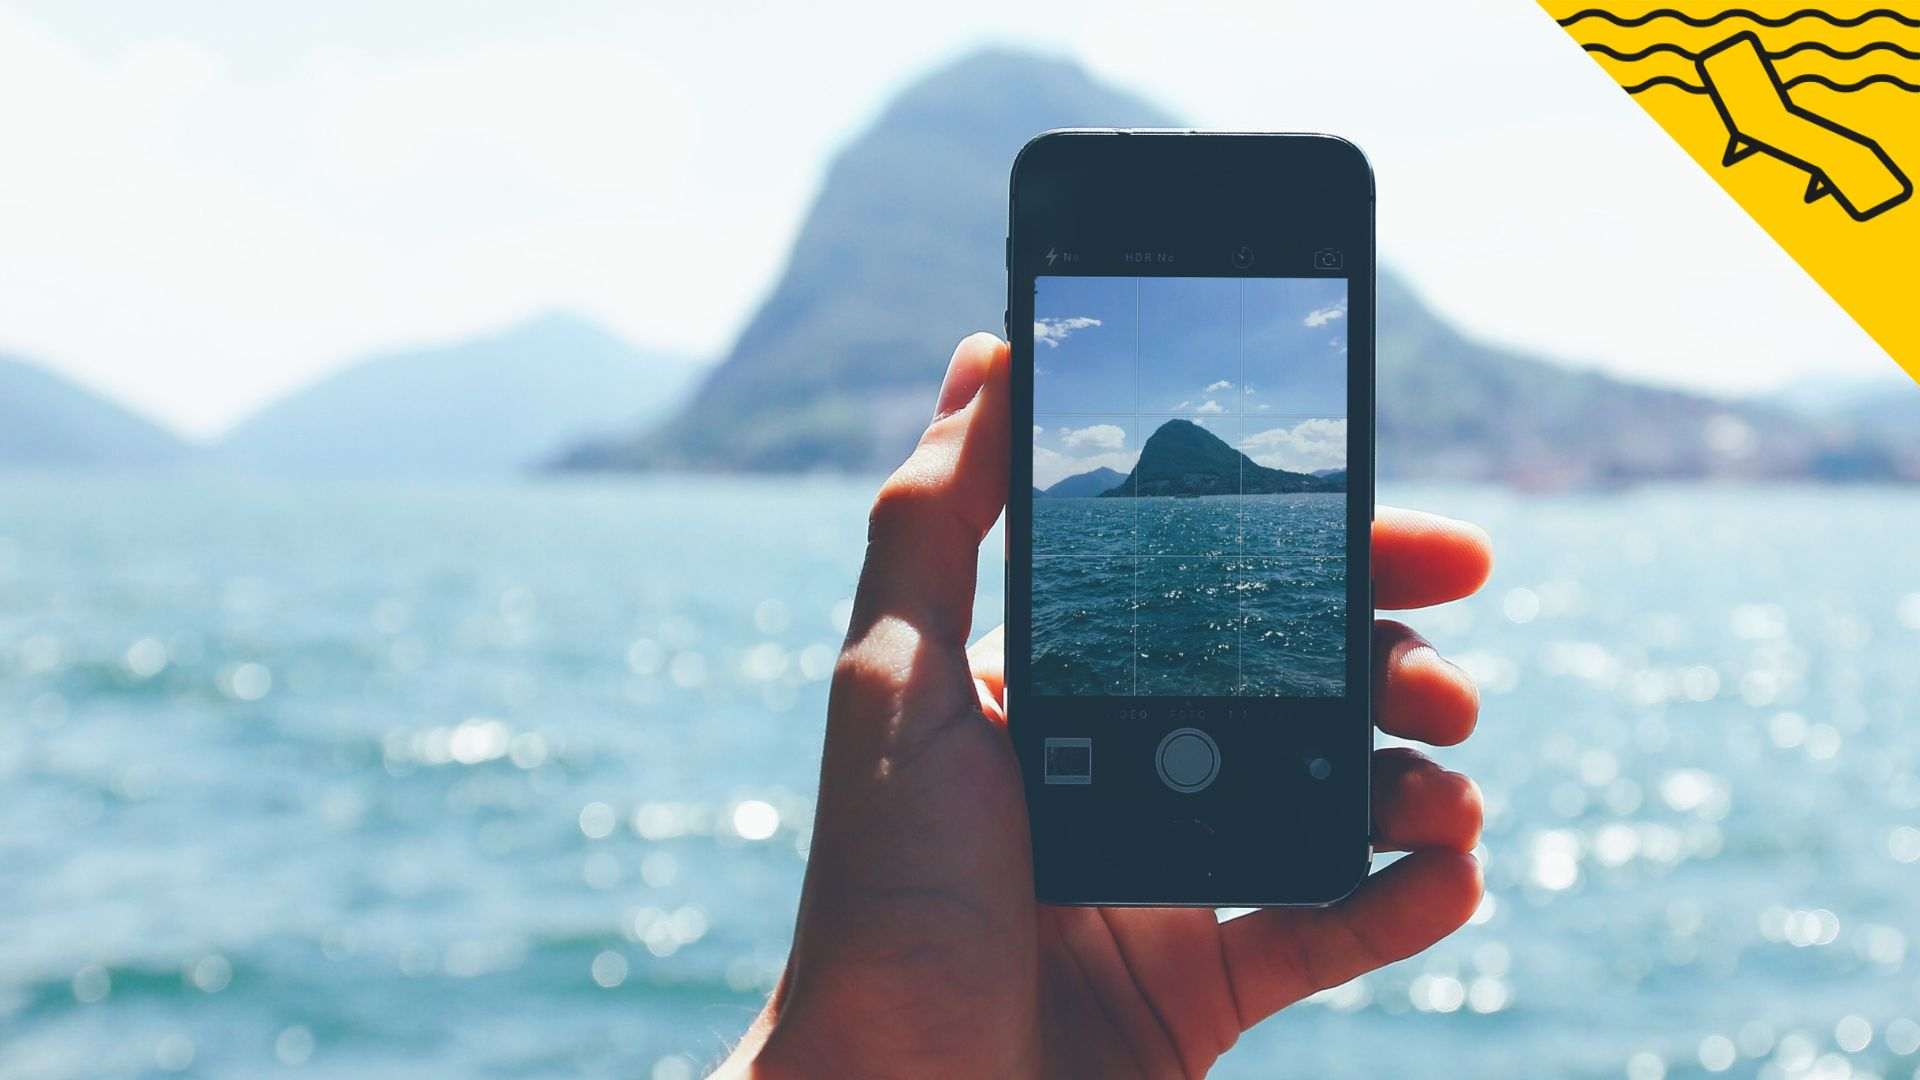 Vols millorar les teves històries d'Instagram? 5 consells de la Generació Z